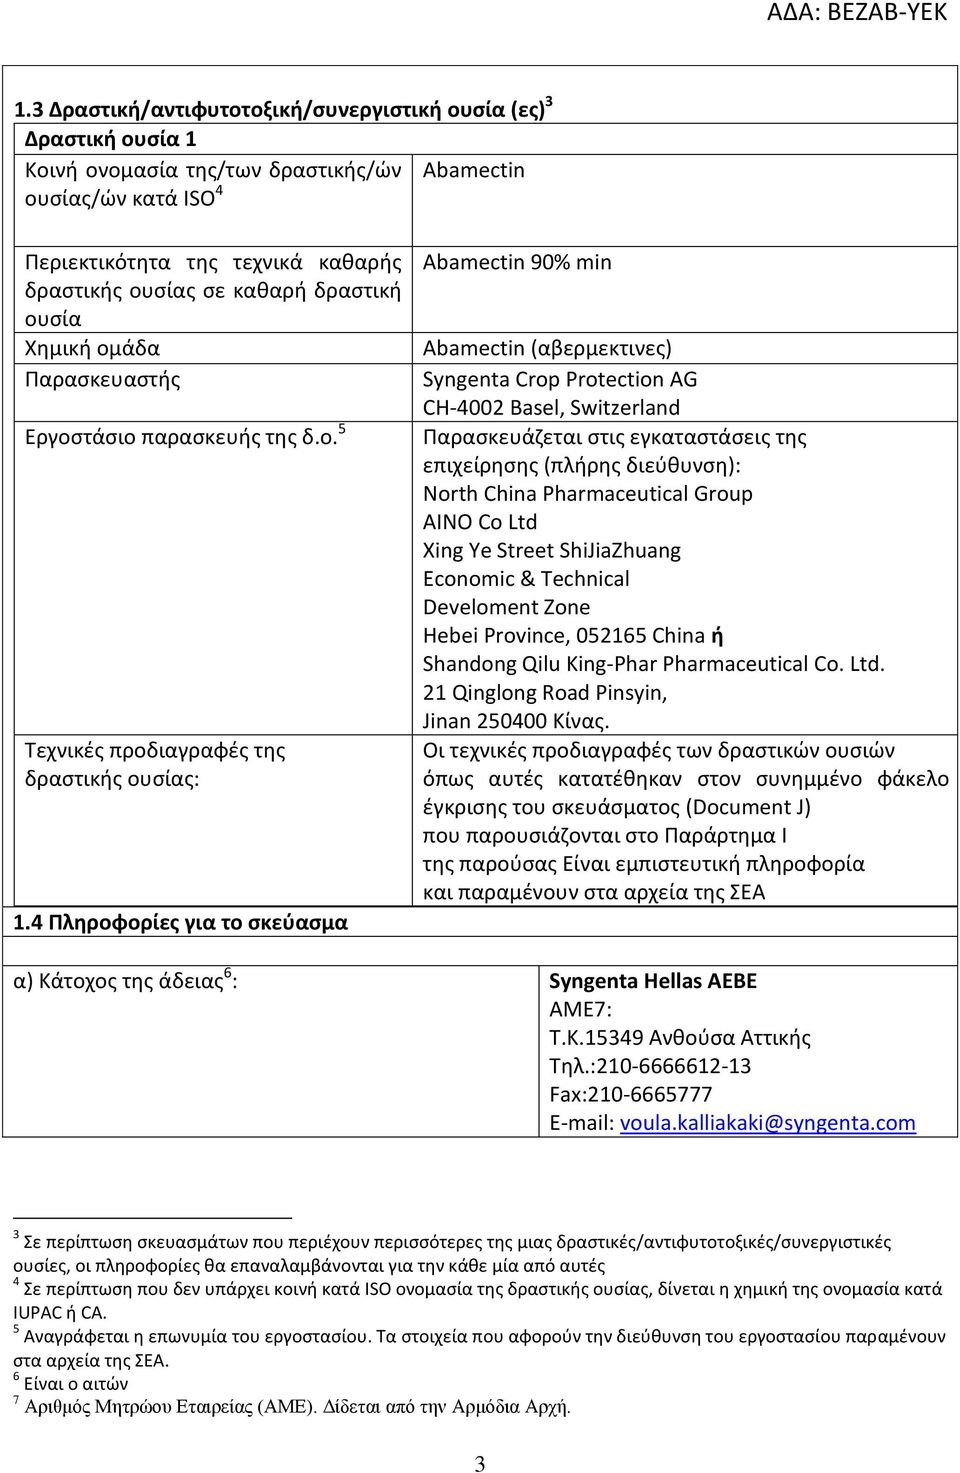 4 Πληροφορίες για το σκεύασμα Abamectin 90% min Abamectin (αβερμεκτινες) Syngenta Crop Protection AG CH-4002 Basel, Switzerland Παρασκευάζεται στις εγκαταστάσεις της επιχείρησης (πλήρης διεύθυνση):